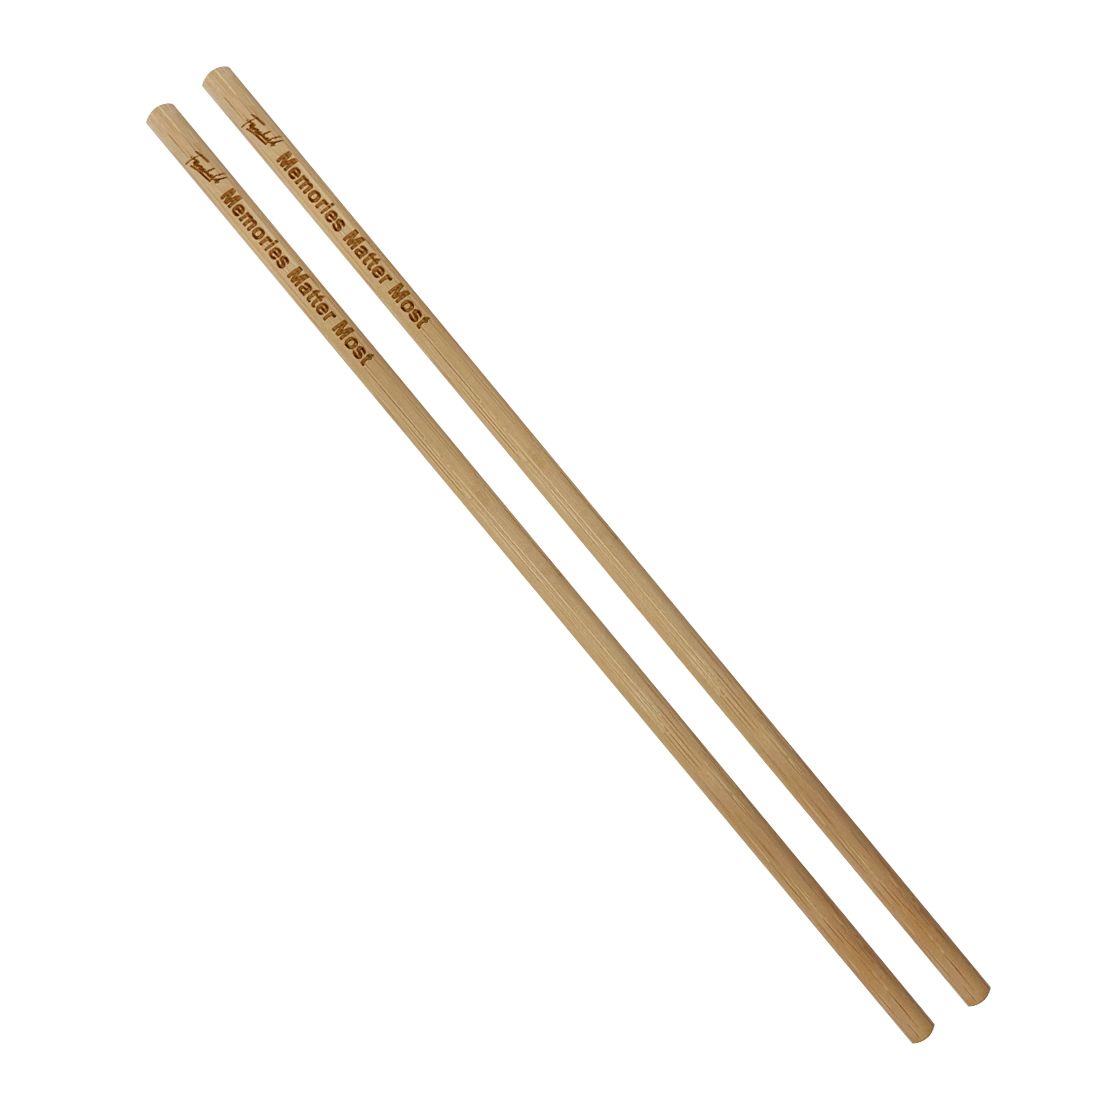 Palillos de bambú auténticos personalizados